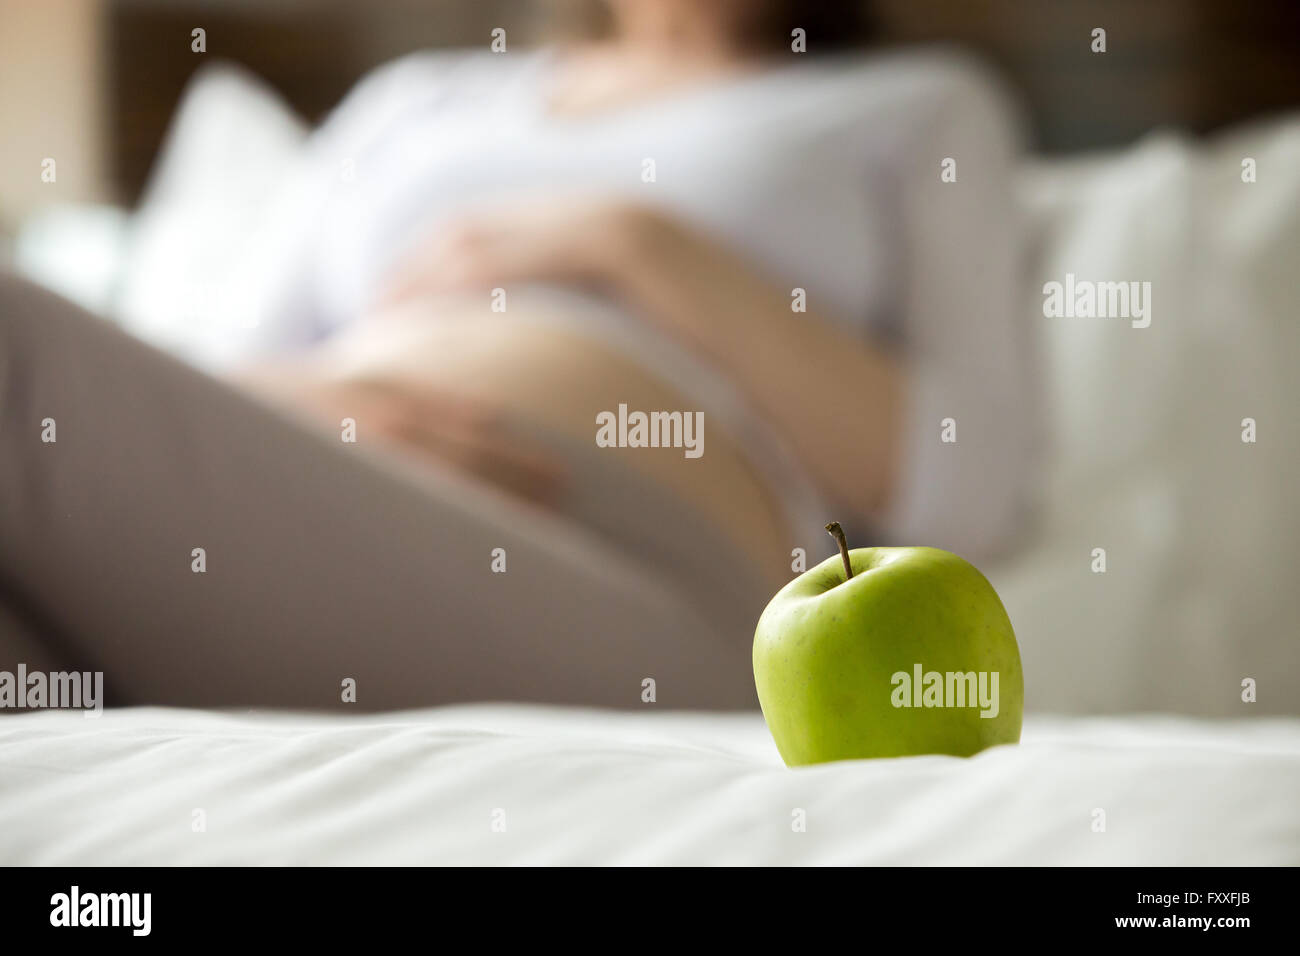 Mangiare sano concetto per donne in stato di gravidanza. Close-up di mela verde. Giovani modello incinta sullo sfondo. Futura Mamma aspetta Foto Stock